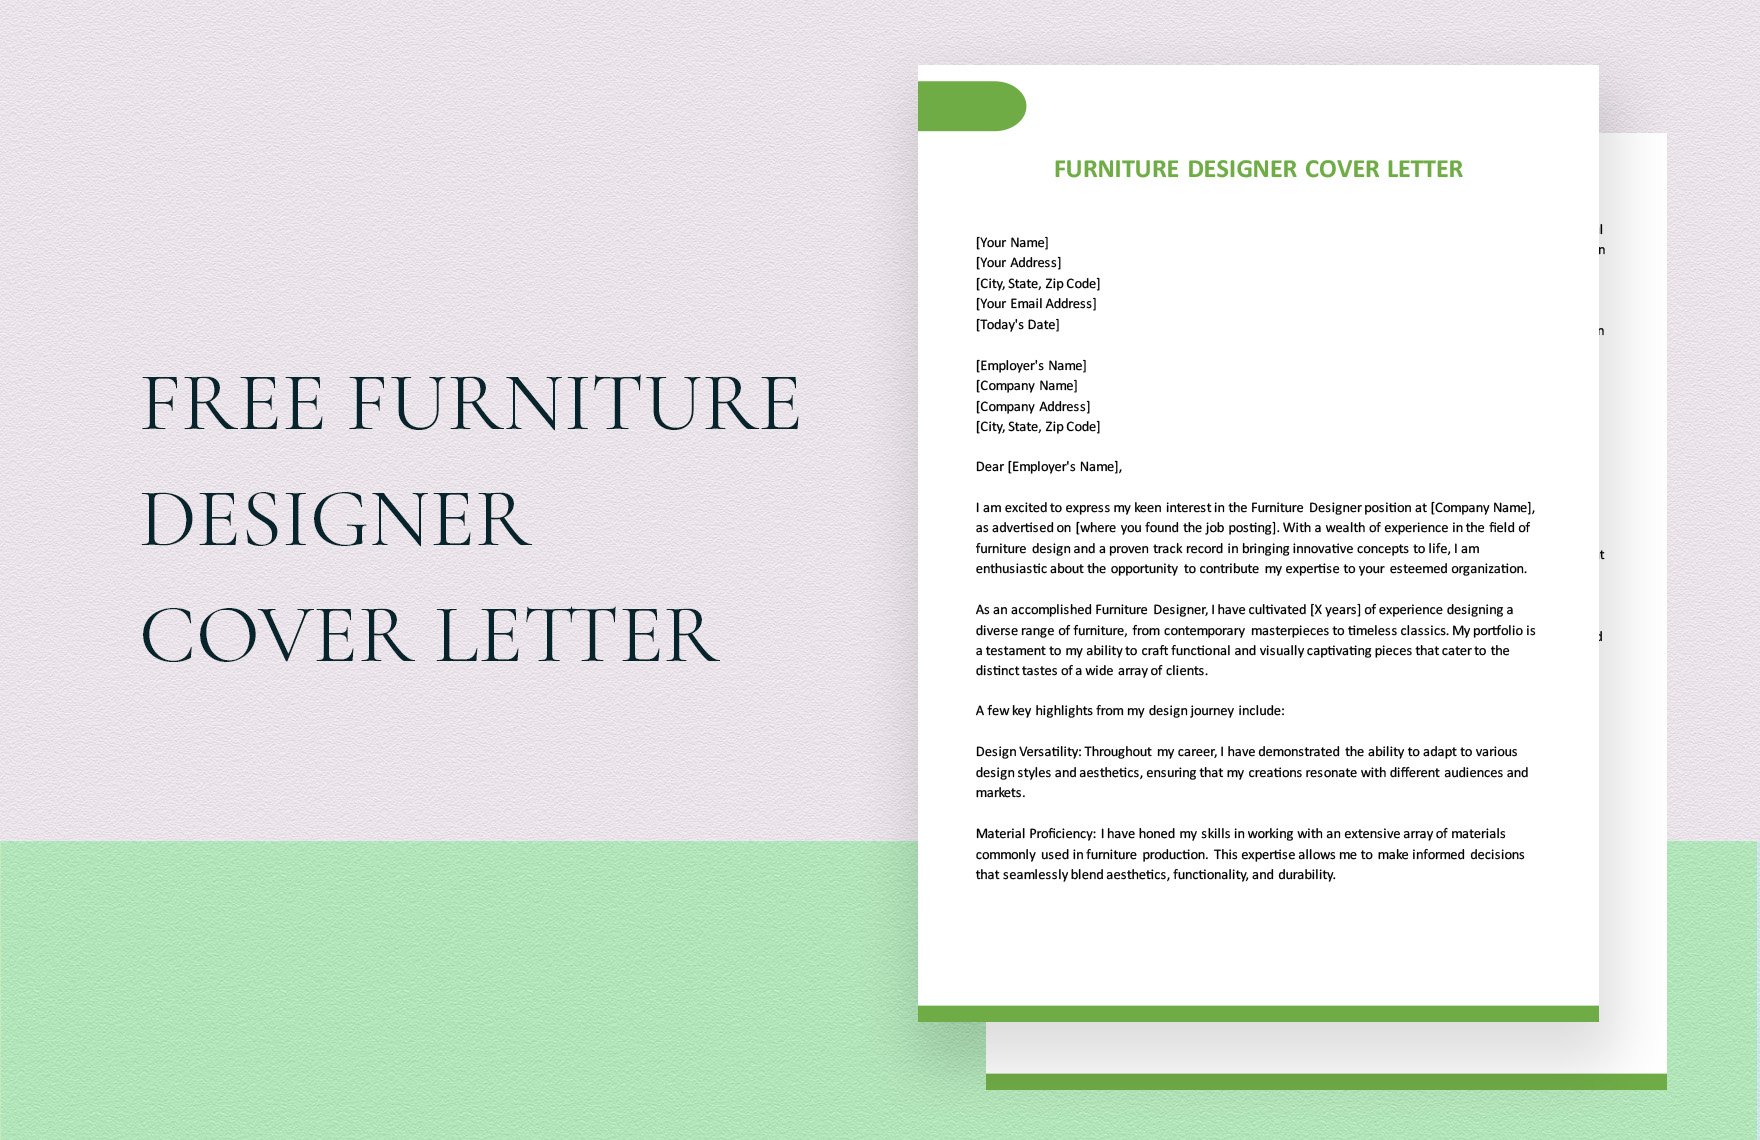 Furniture Designer Cover Letter in Word, Google Docs, PDF